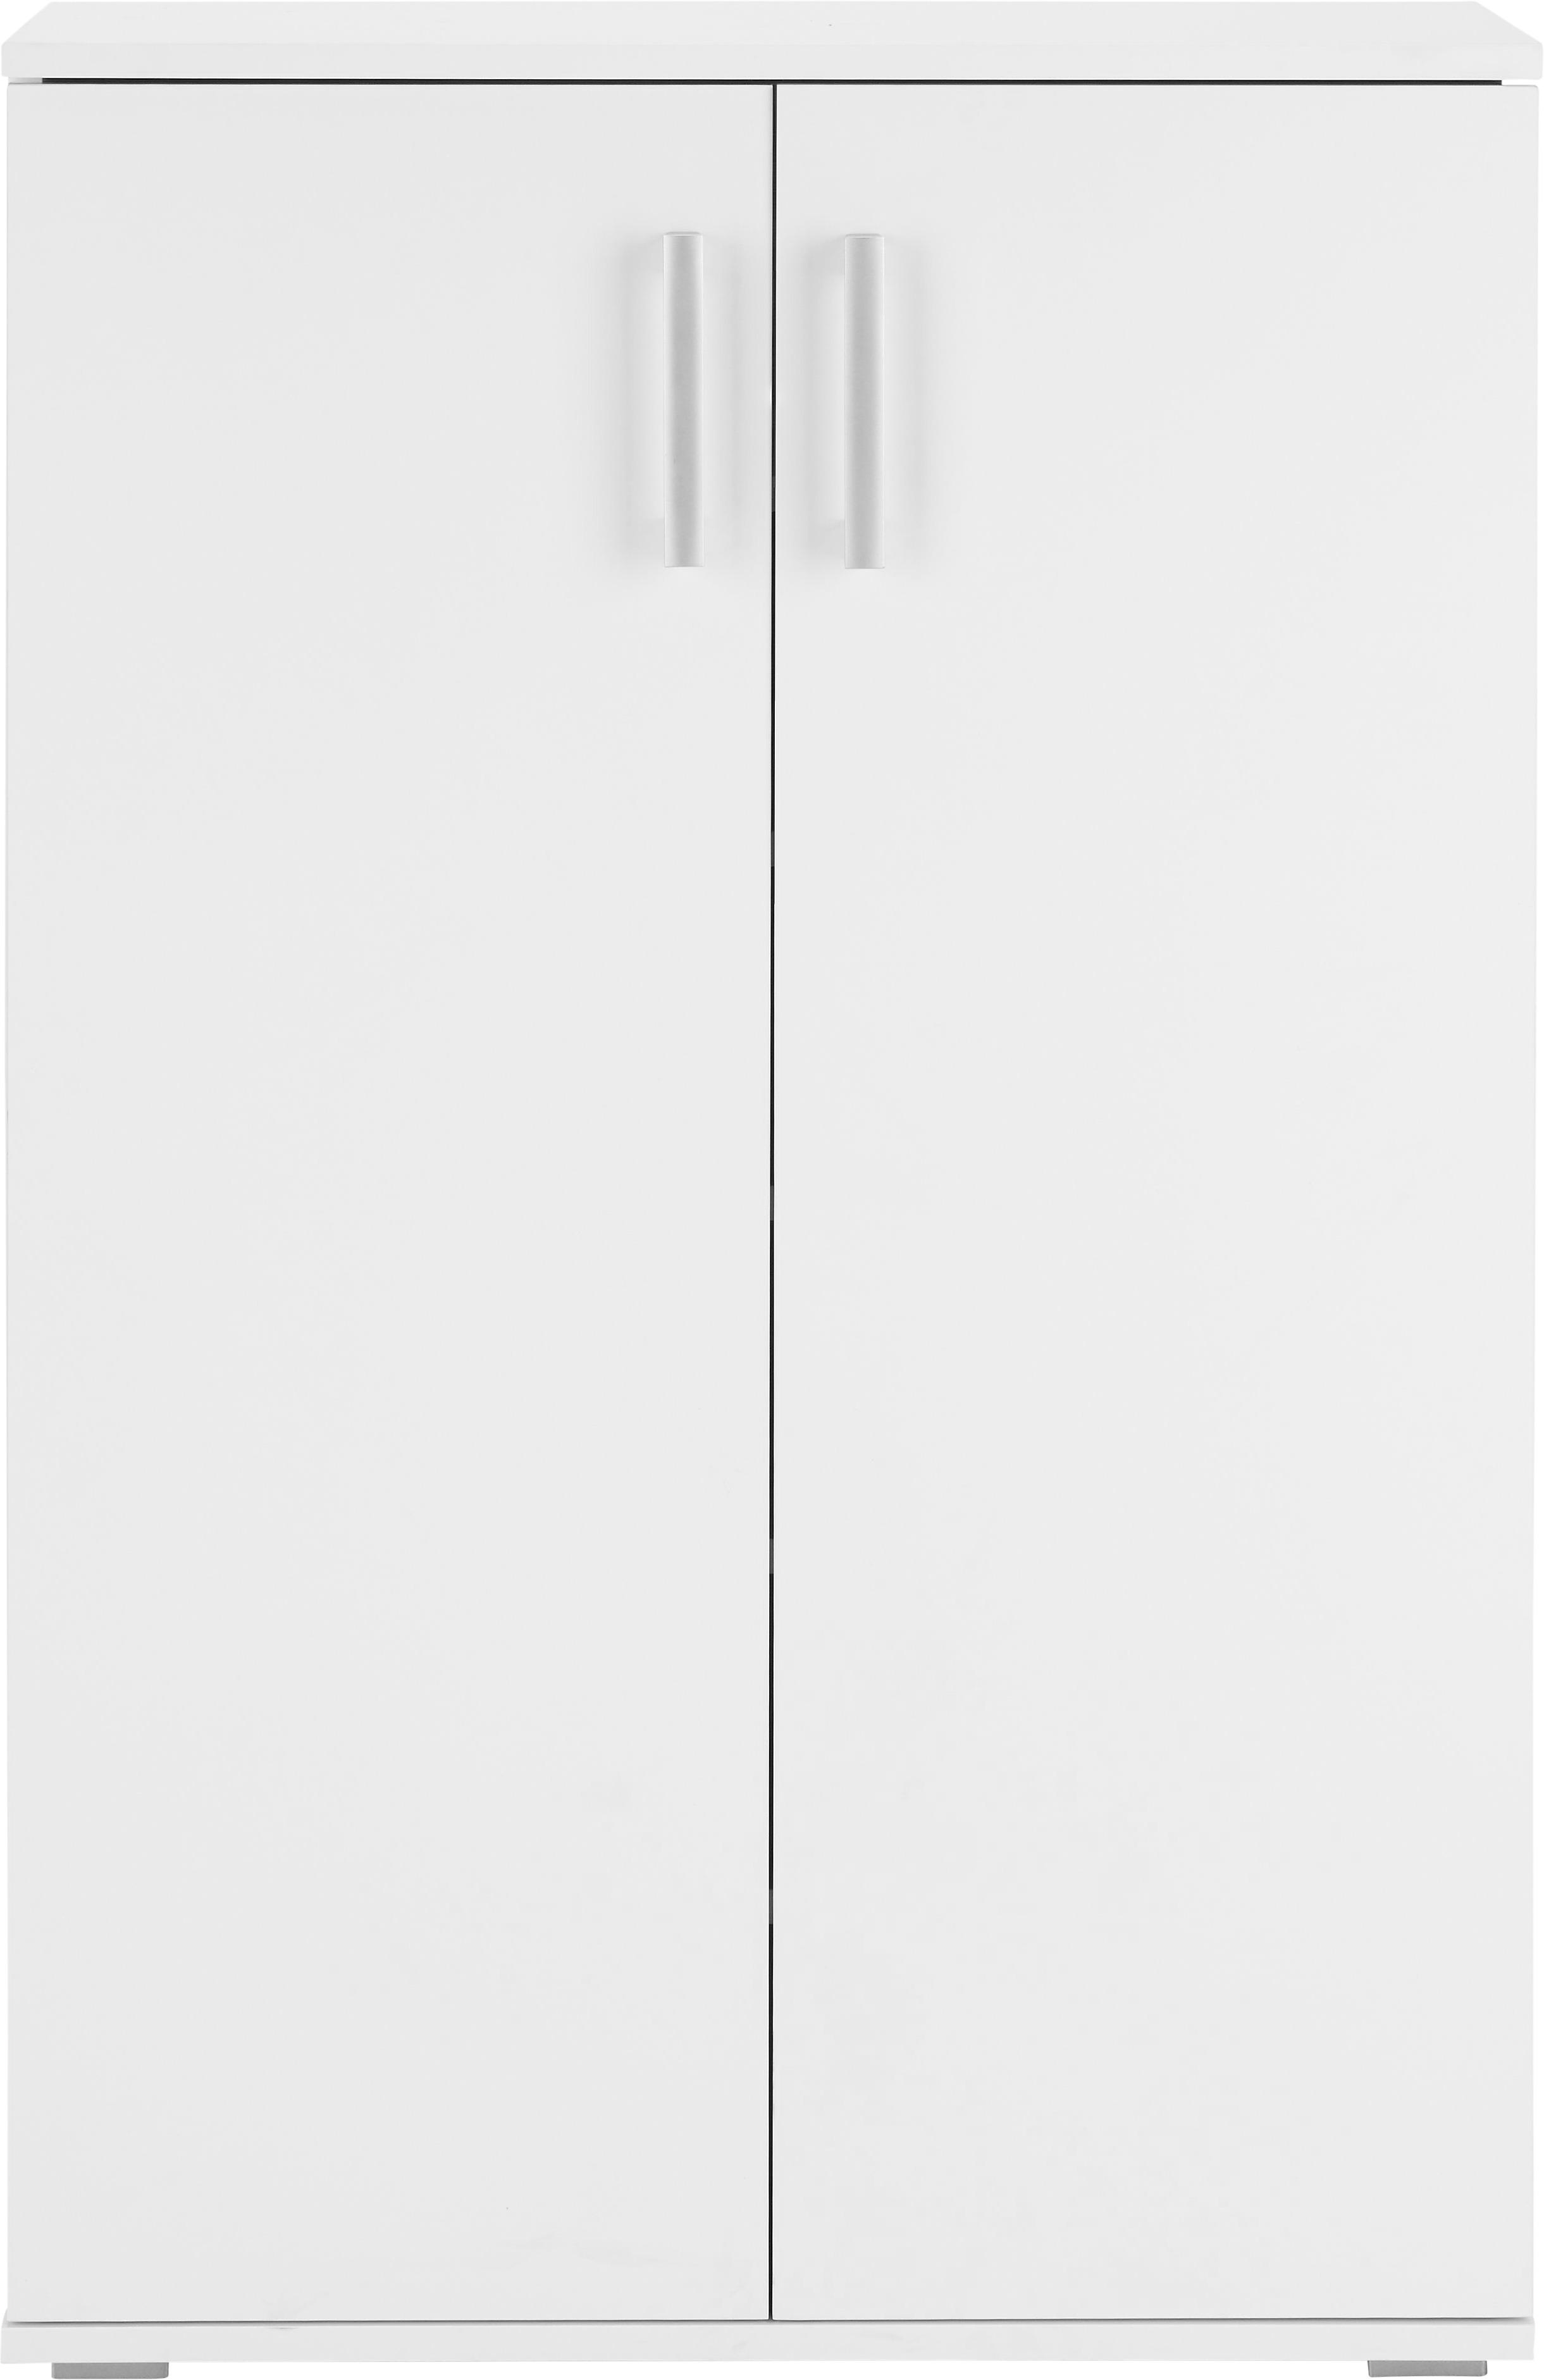 Schuhschrank in Weiß - Alufarben/Weiß, MODERN, Holzwerkstoff/Kunststoff (70/106/34cm) - Modern Living